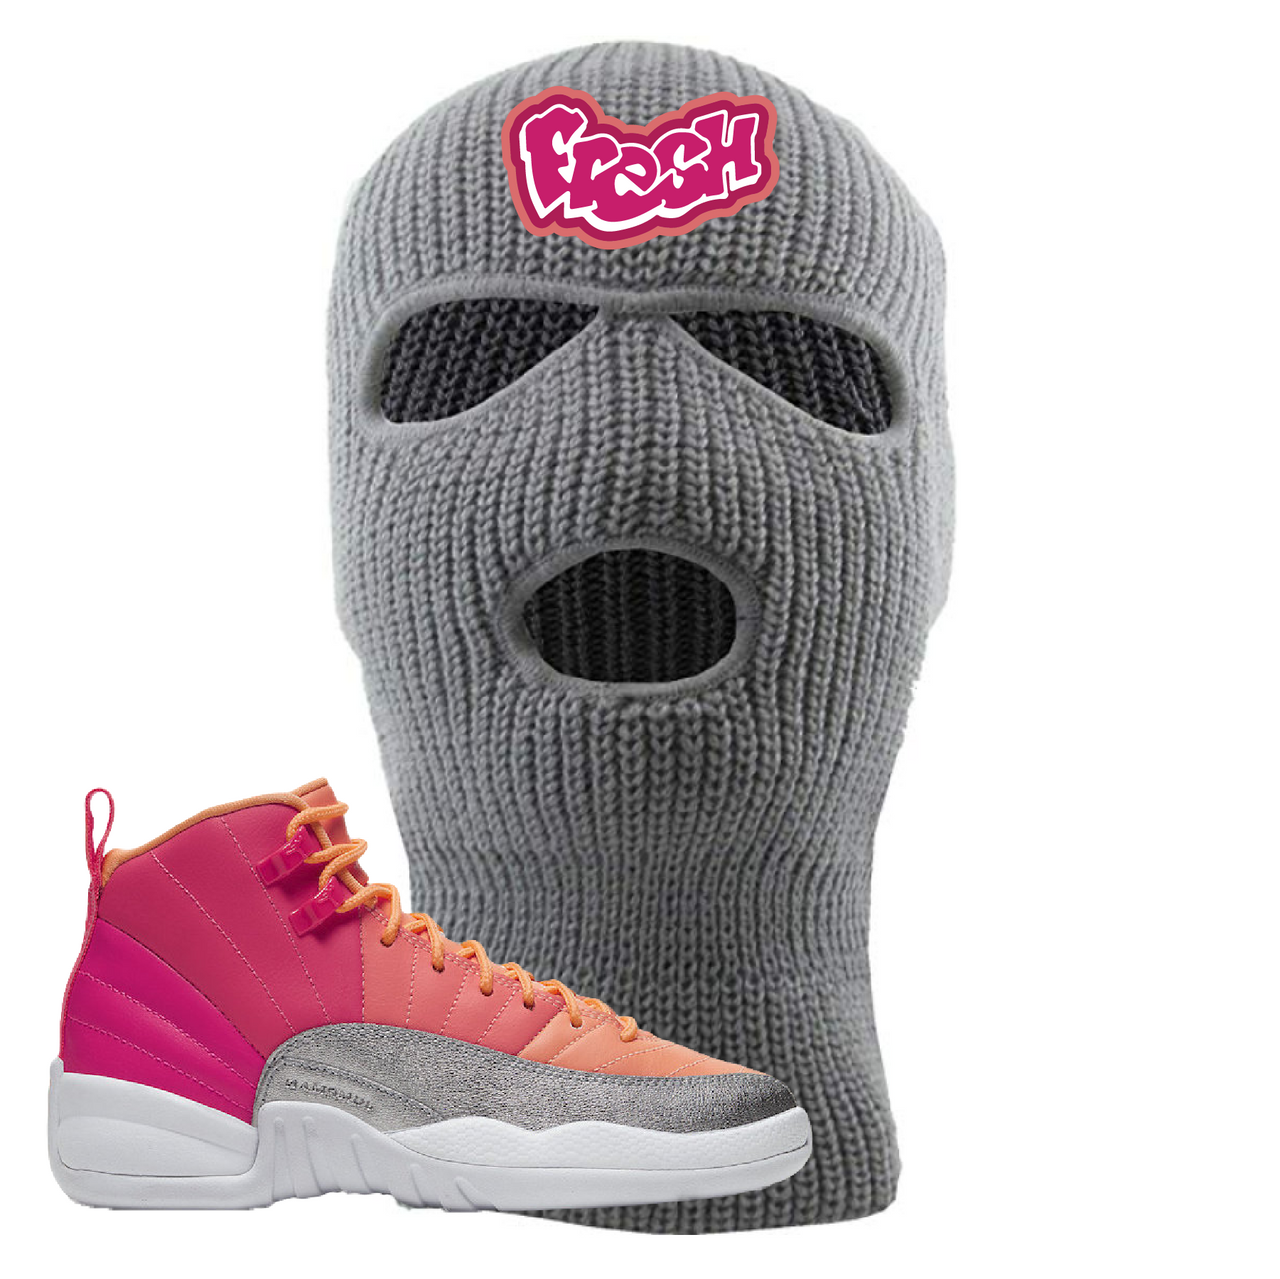 Jordan 12 GS Hot Punch Fresh Light Gray Sneaker Hook Up Ski Mask